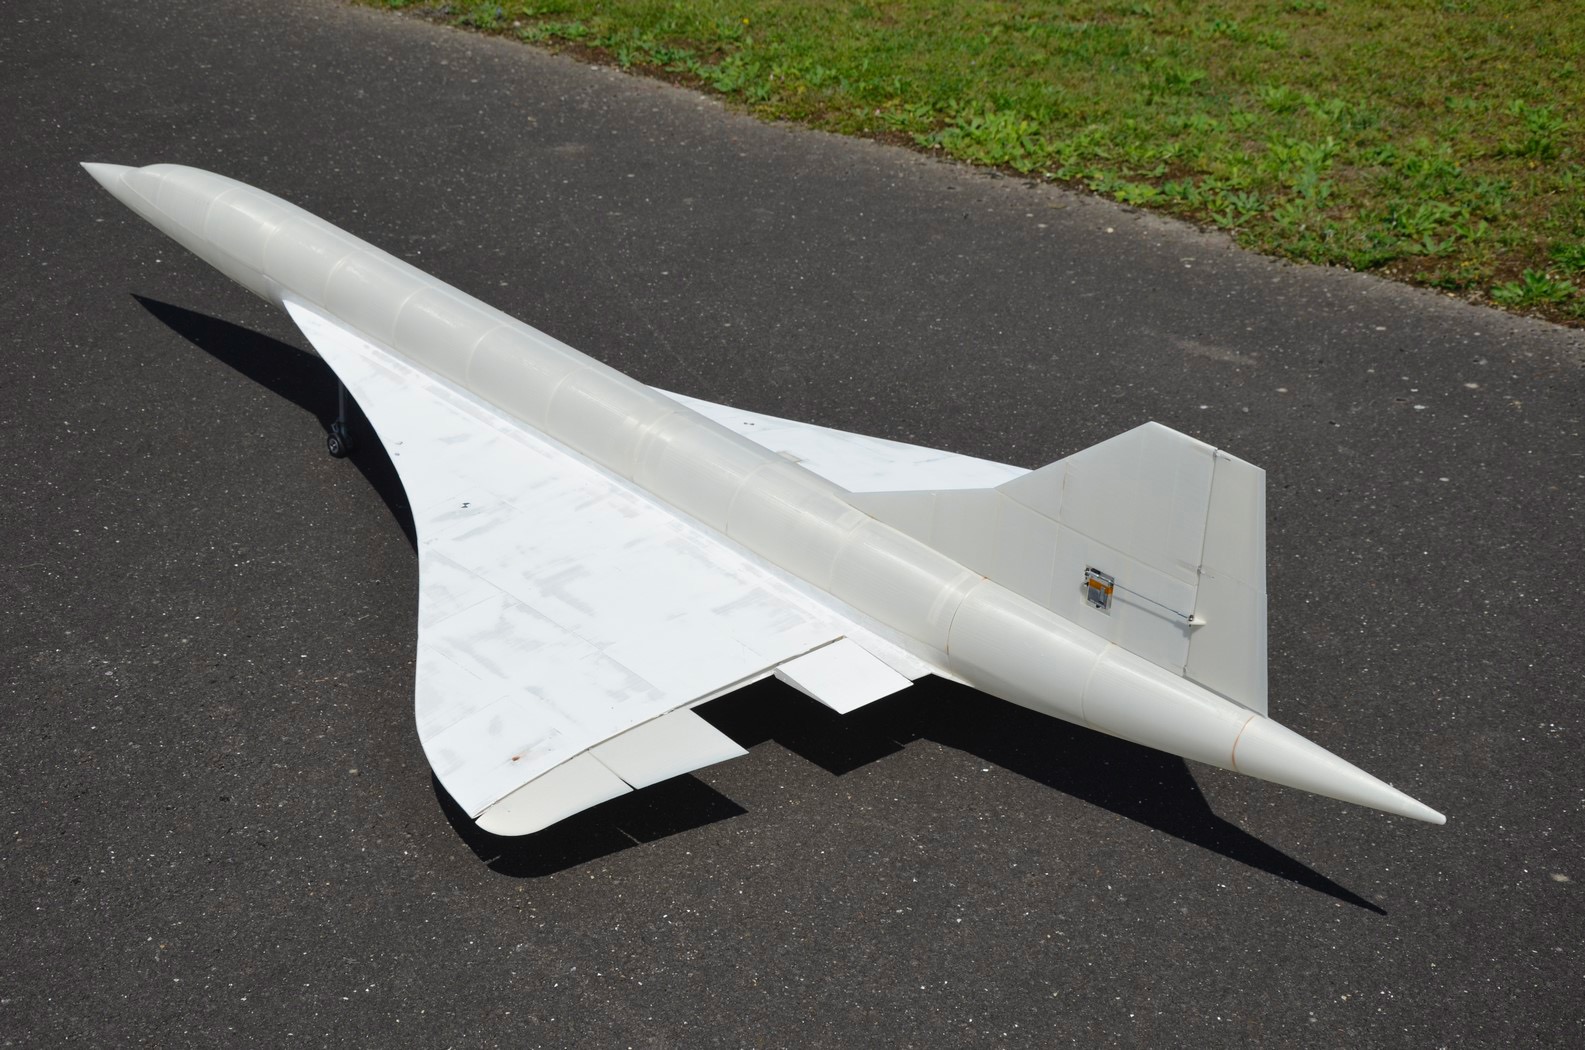 Concorde-essais-de-roulage-le-13-08-21-14